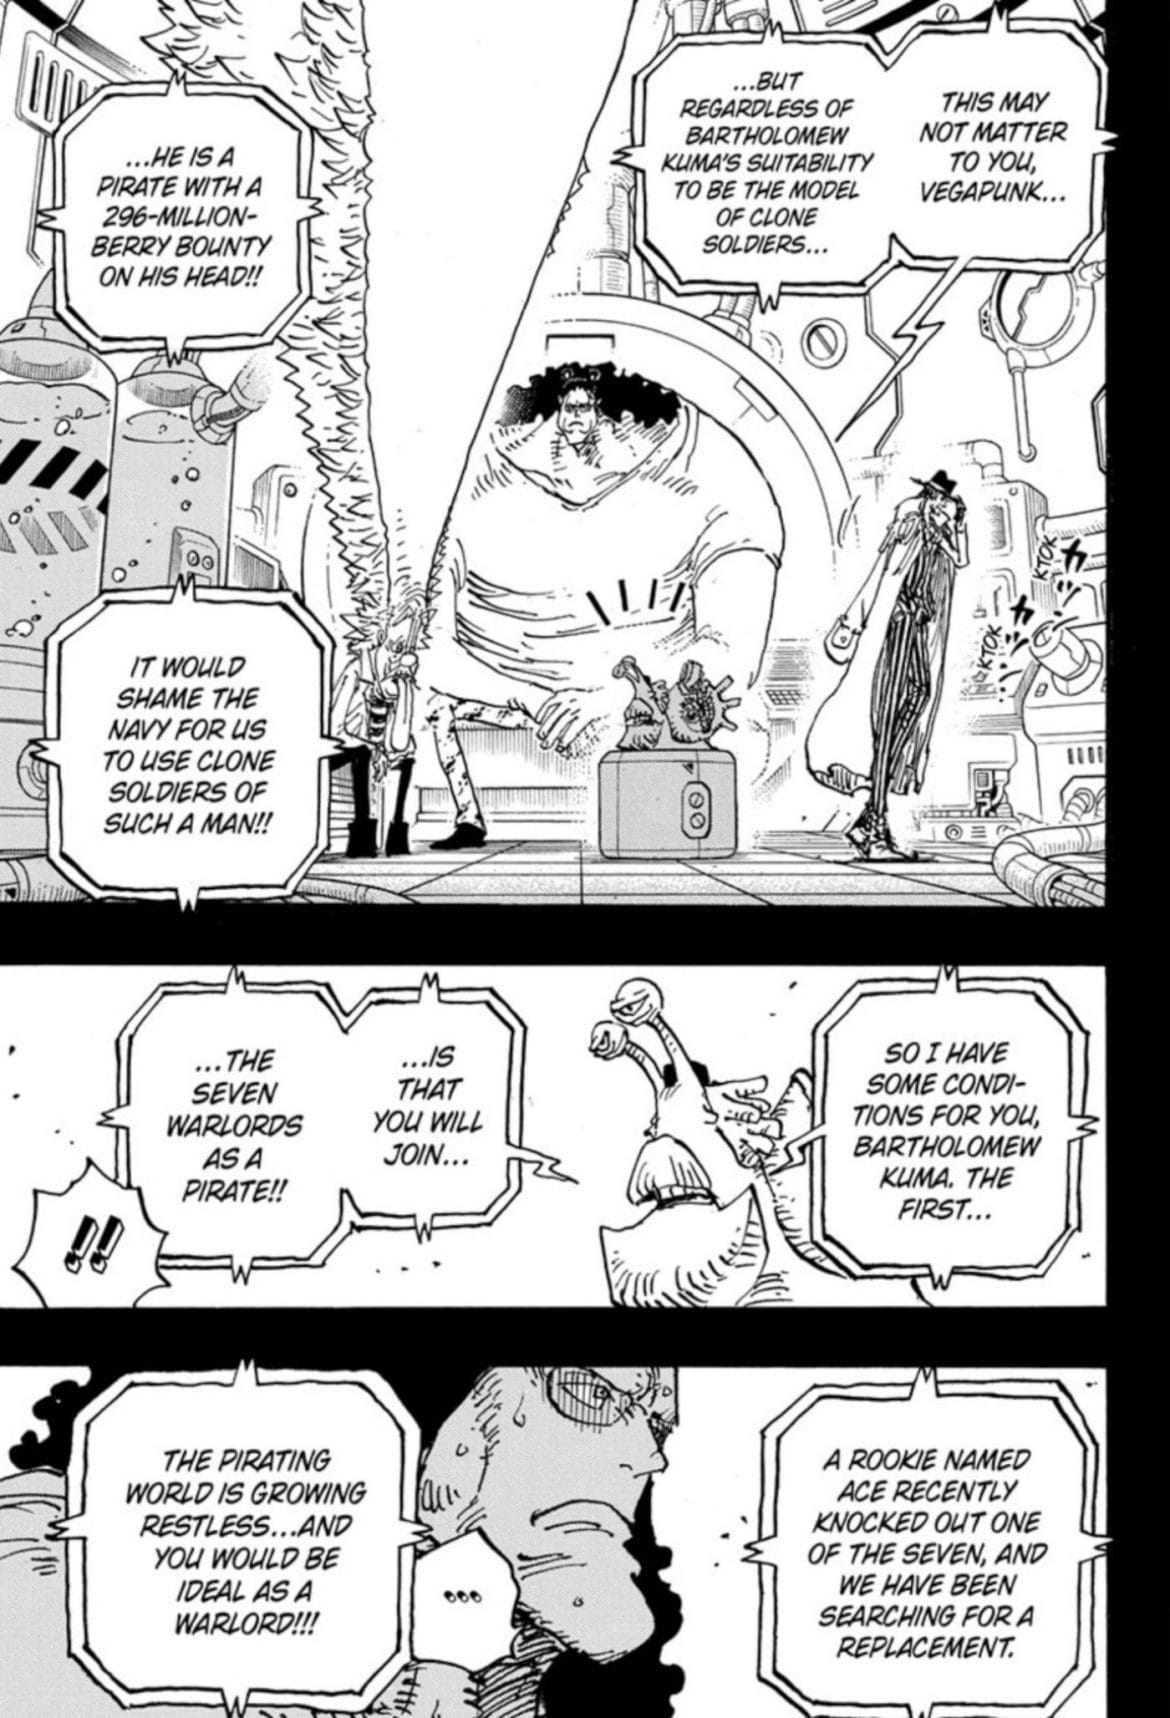 Painéis de mangá de One Piece O capítulo 1100 mostra Kuma, Vegapunk e Almirante Kizaru conversando com um caracol transponder sobre o que Kuma precisará fazer para salvar Bonney.